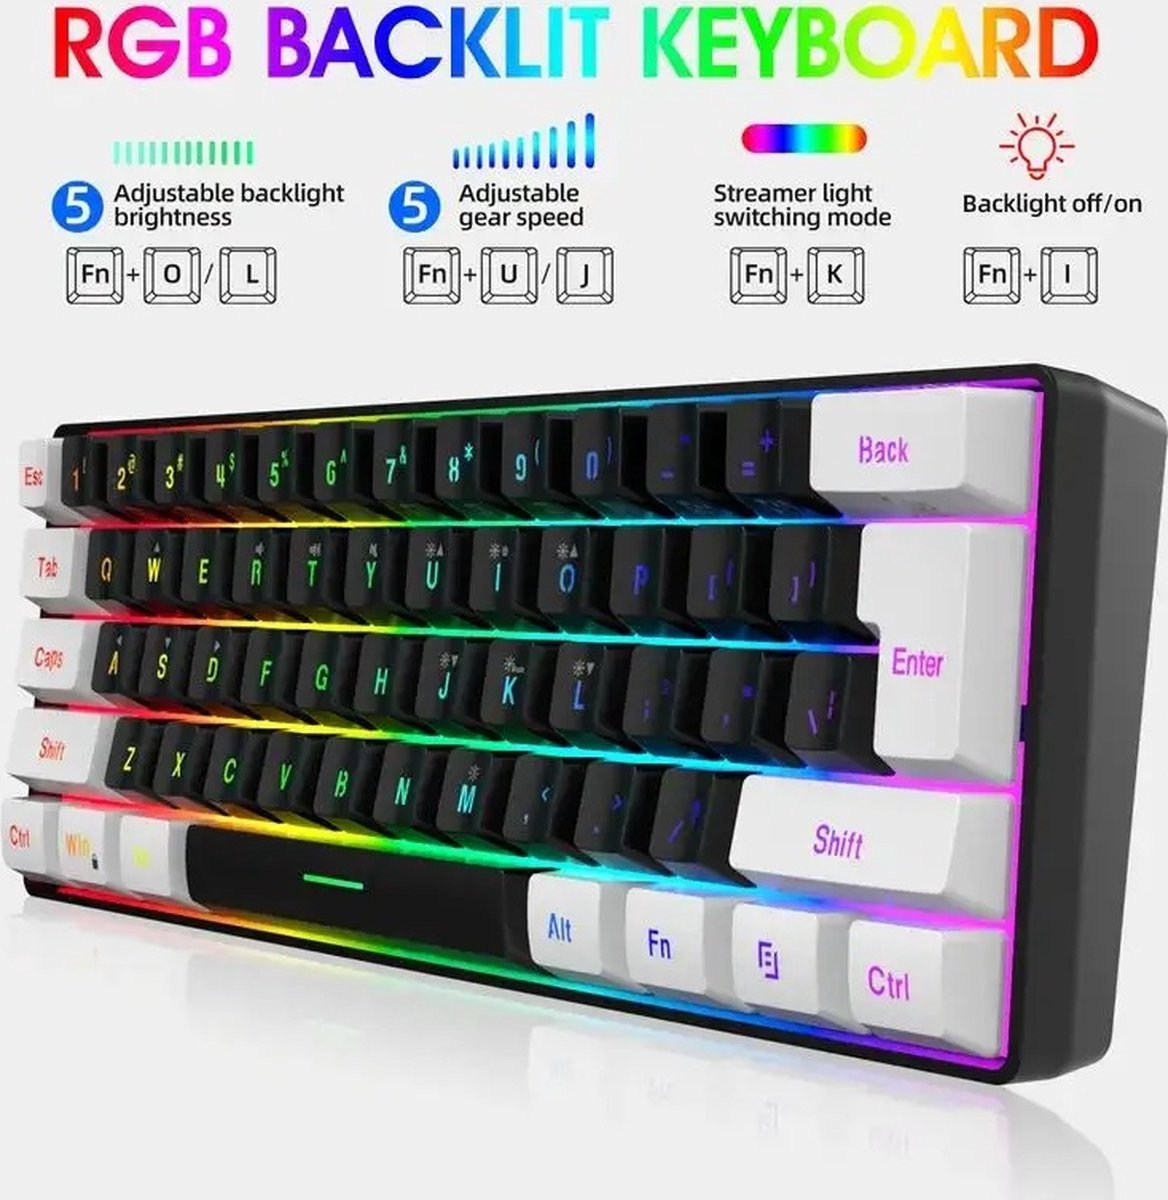 Beroli - 60% Bedraad Gaming Toetsenbord - RGB Backlight - Waterdicht - Compacte Mini Toetsenbord - 61 Toetsen - PC/Mac Gamers